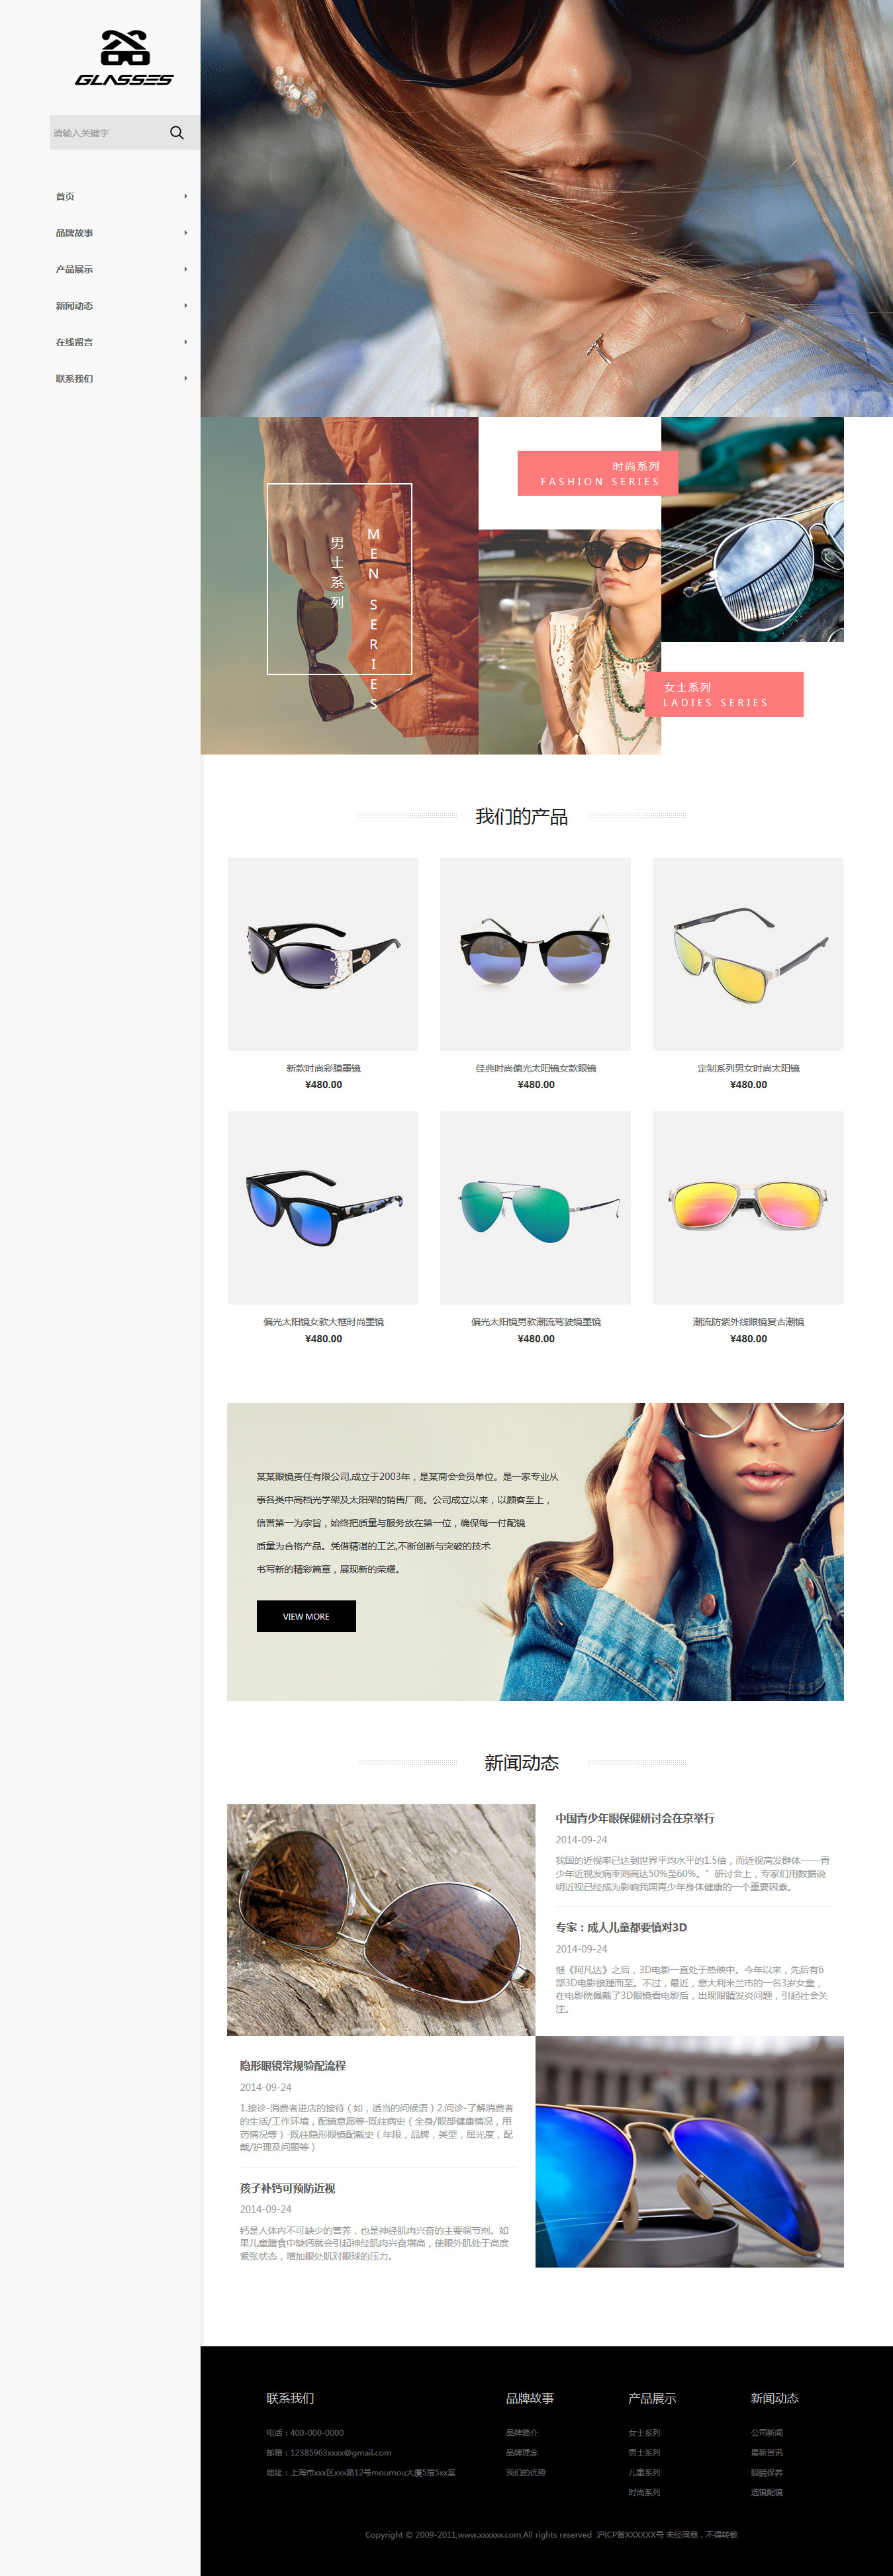 企业网站精美模板-glasses-480